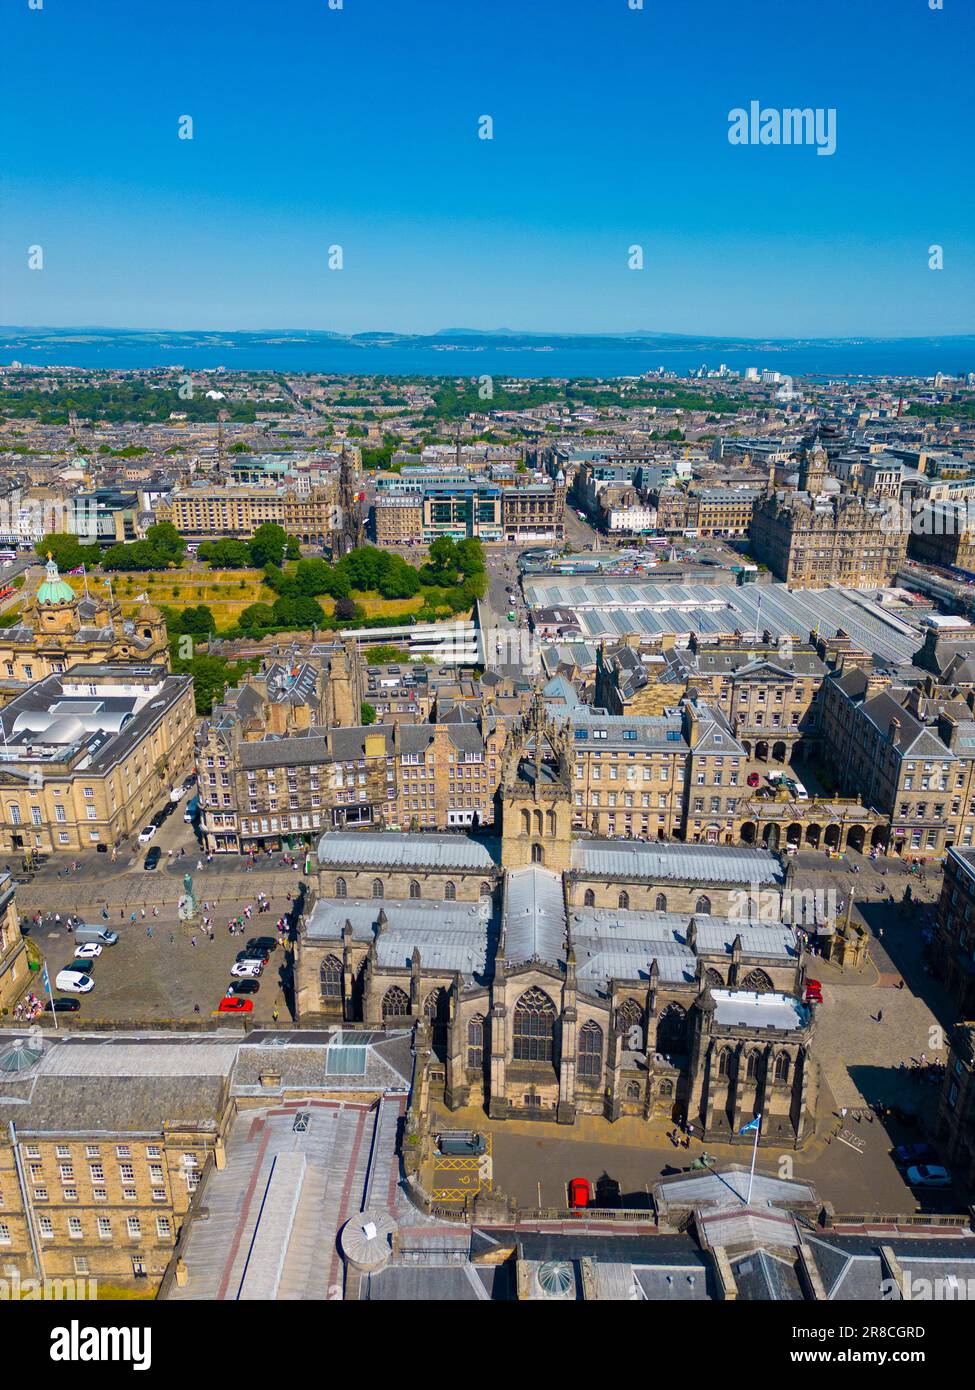 Vue aérienne de la cathédrale St Giles dans la vieille ville d'Édimbourg, site classé au patrimoine mondial de l'UNESCO, Écosse, Royaume-Uni Banque D'Images